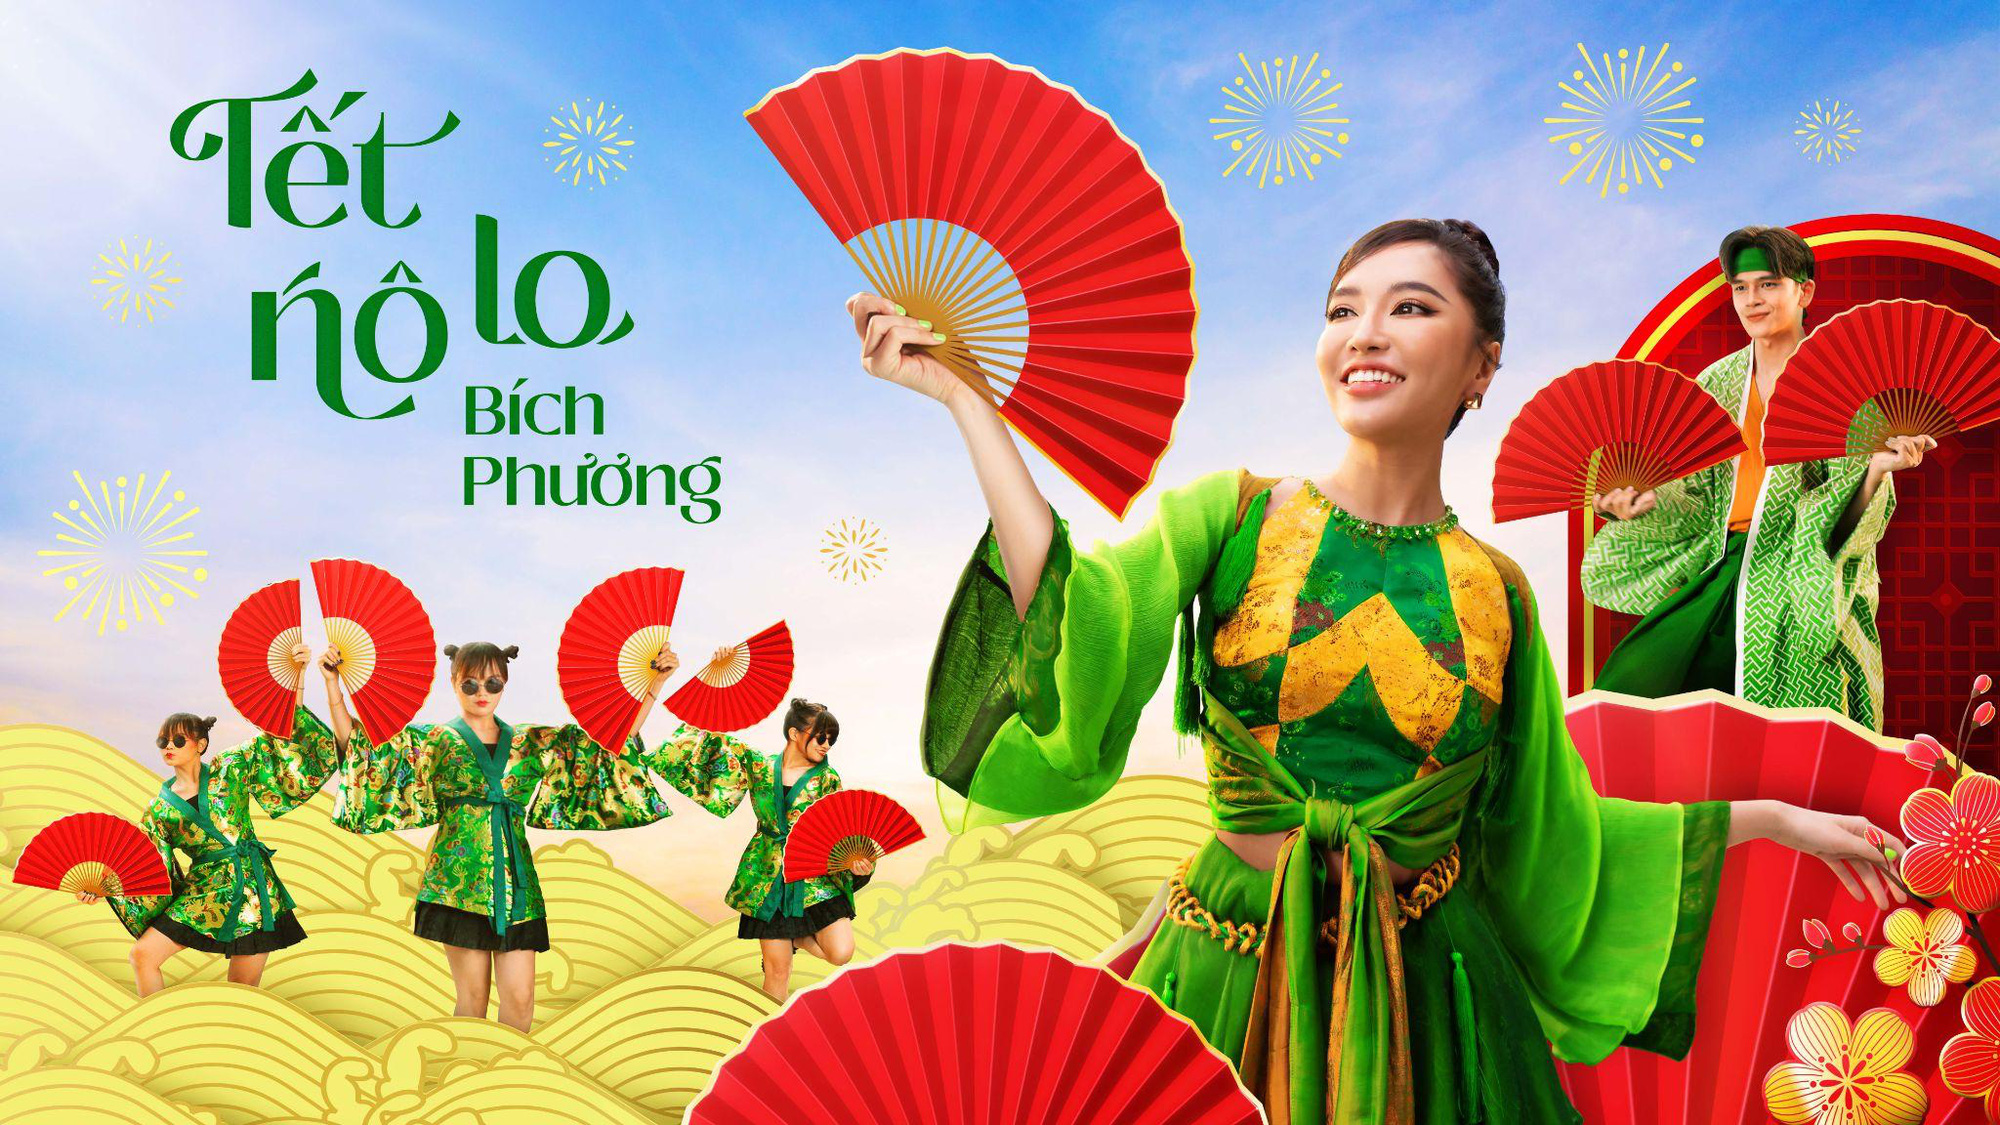 Đại sứ MV Tết gọi tên Bích Phương, năm nào nhạc cũng vui tươi, mang năng lượng tích cực - Ảnh 1.